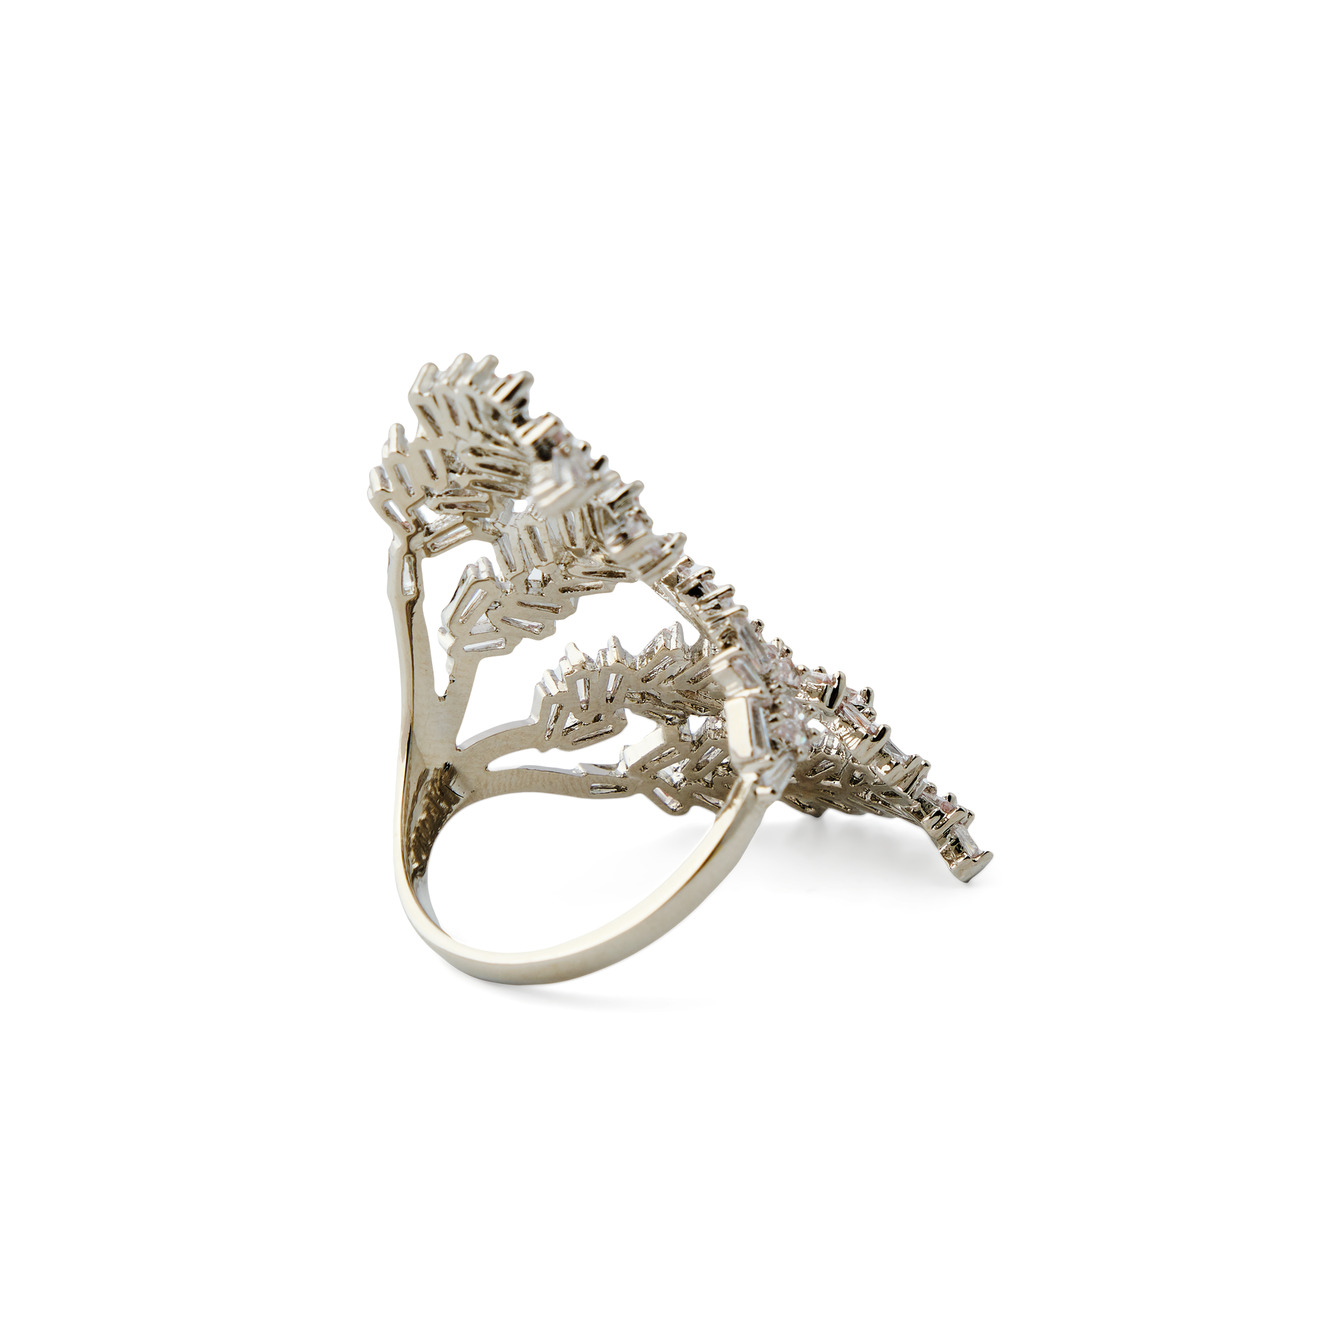 Herald Percy Серебристое кольцо-ветка с кристаллами herald percy серебристое кольцо из сердец с белыми и розовыми кристаллами